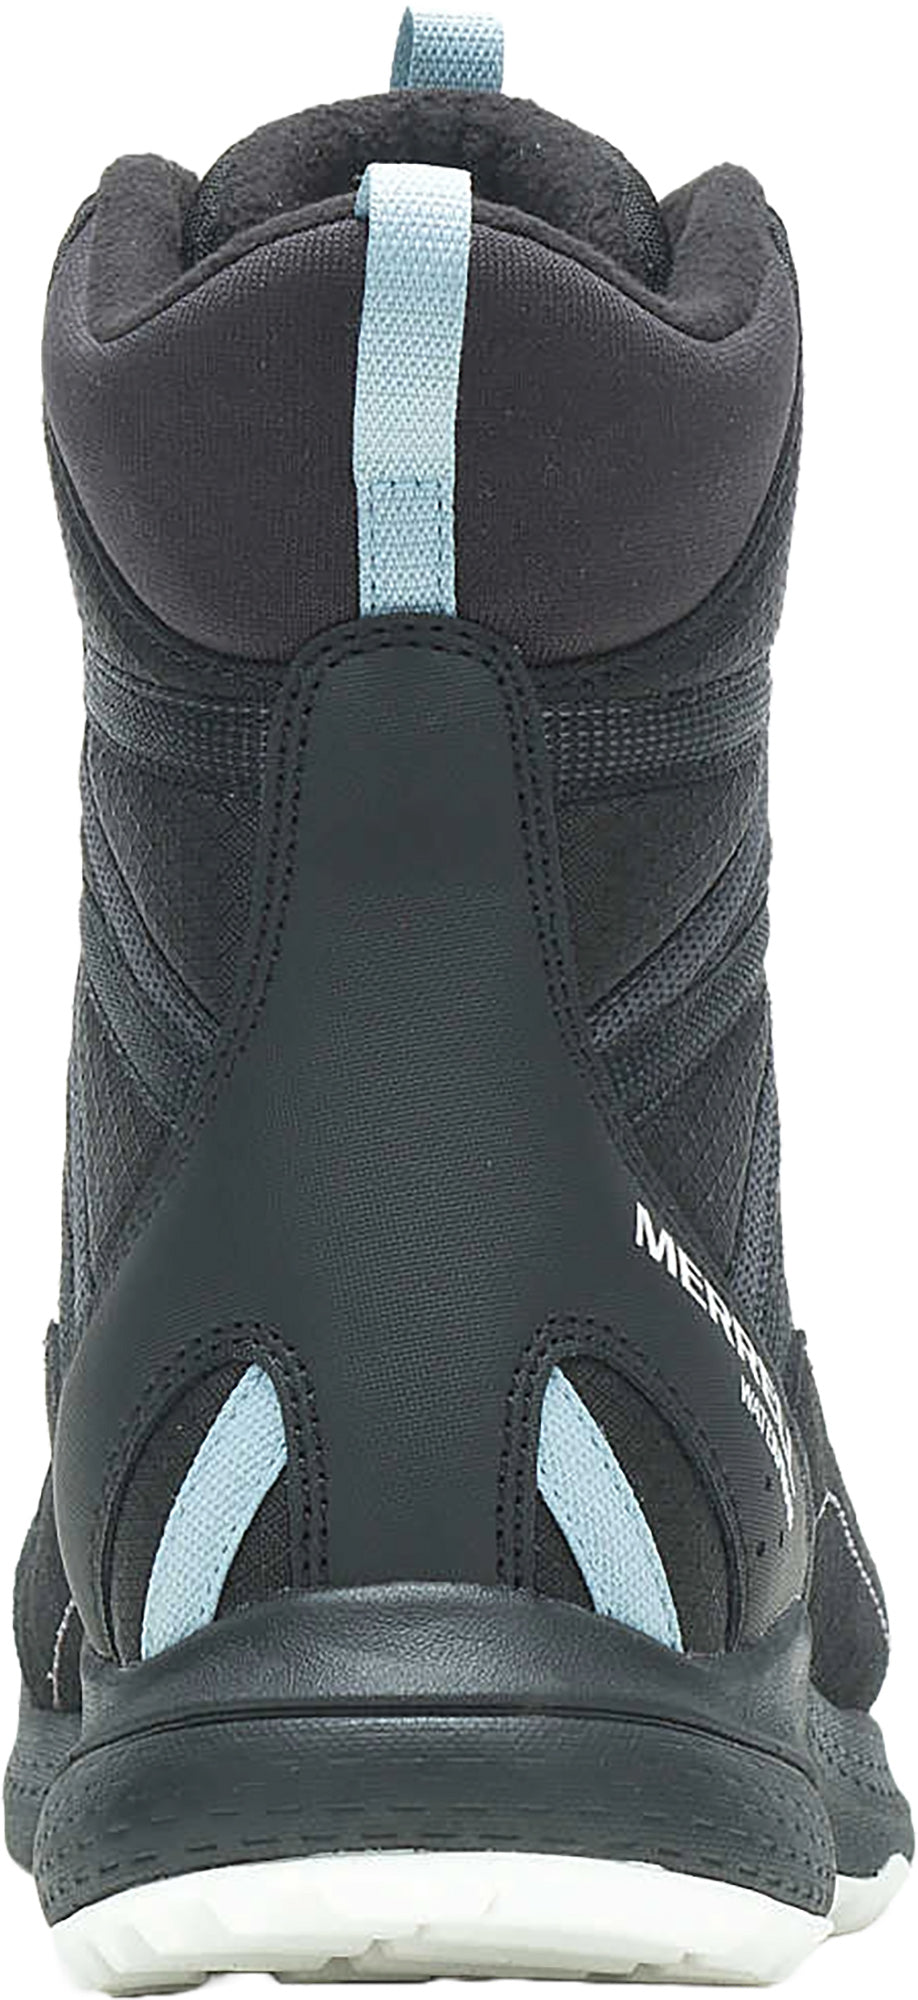 Merrell - Bravada Edge 2 Thermo Demi Boot Waterproof Women's Winter Boot